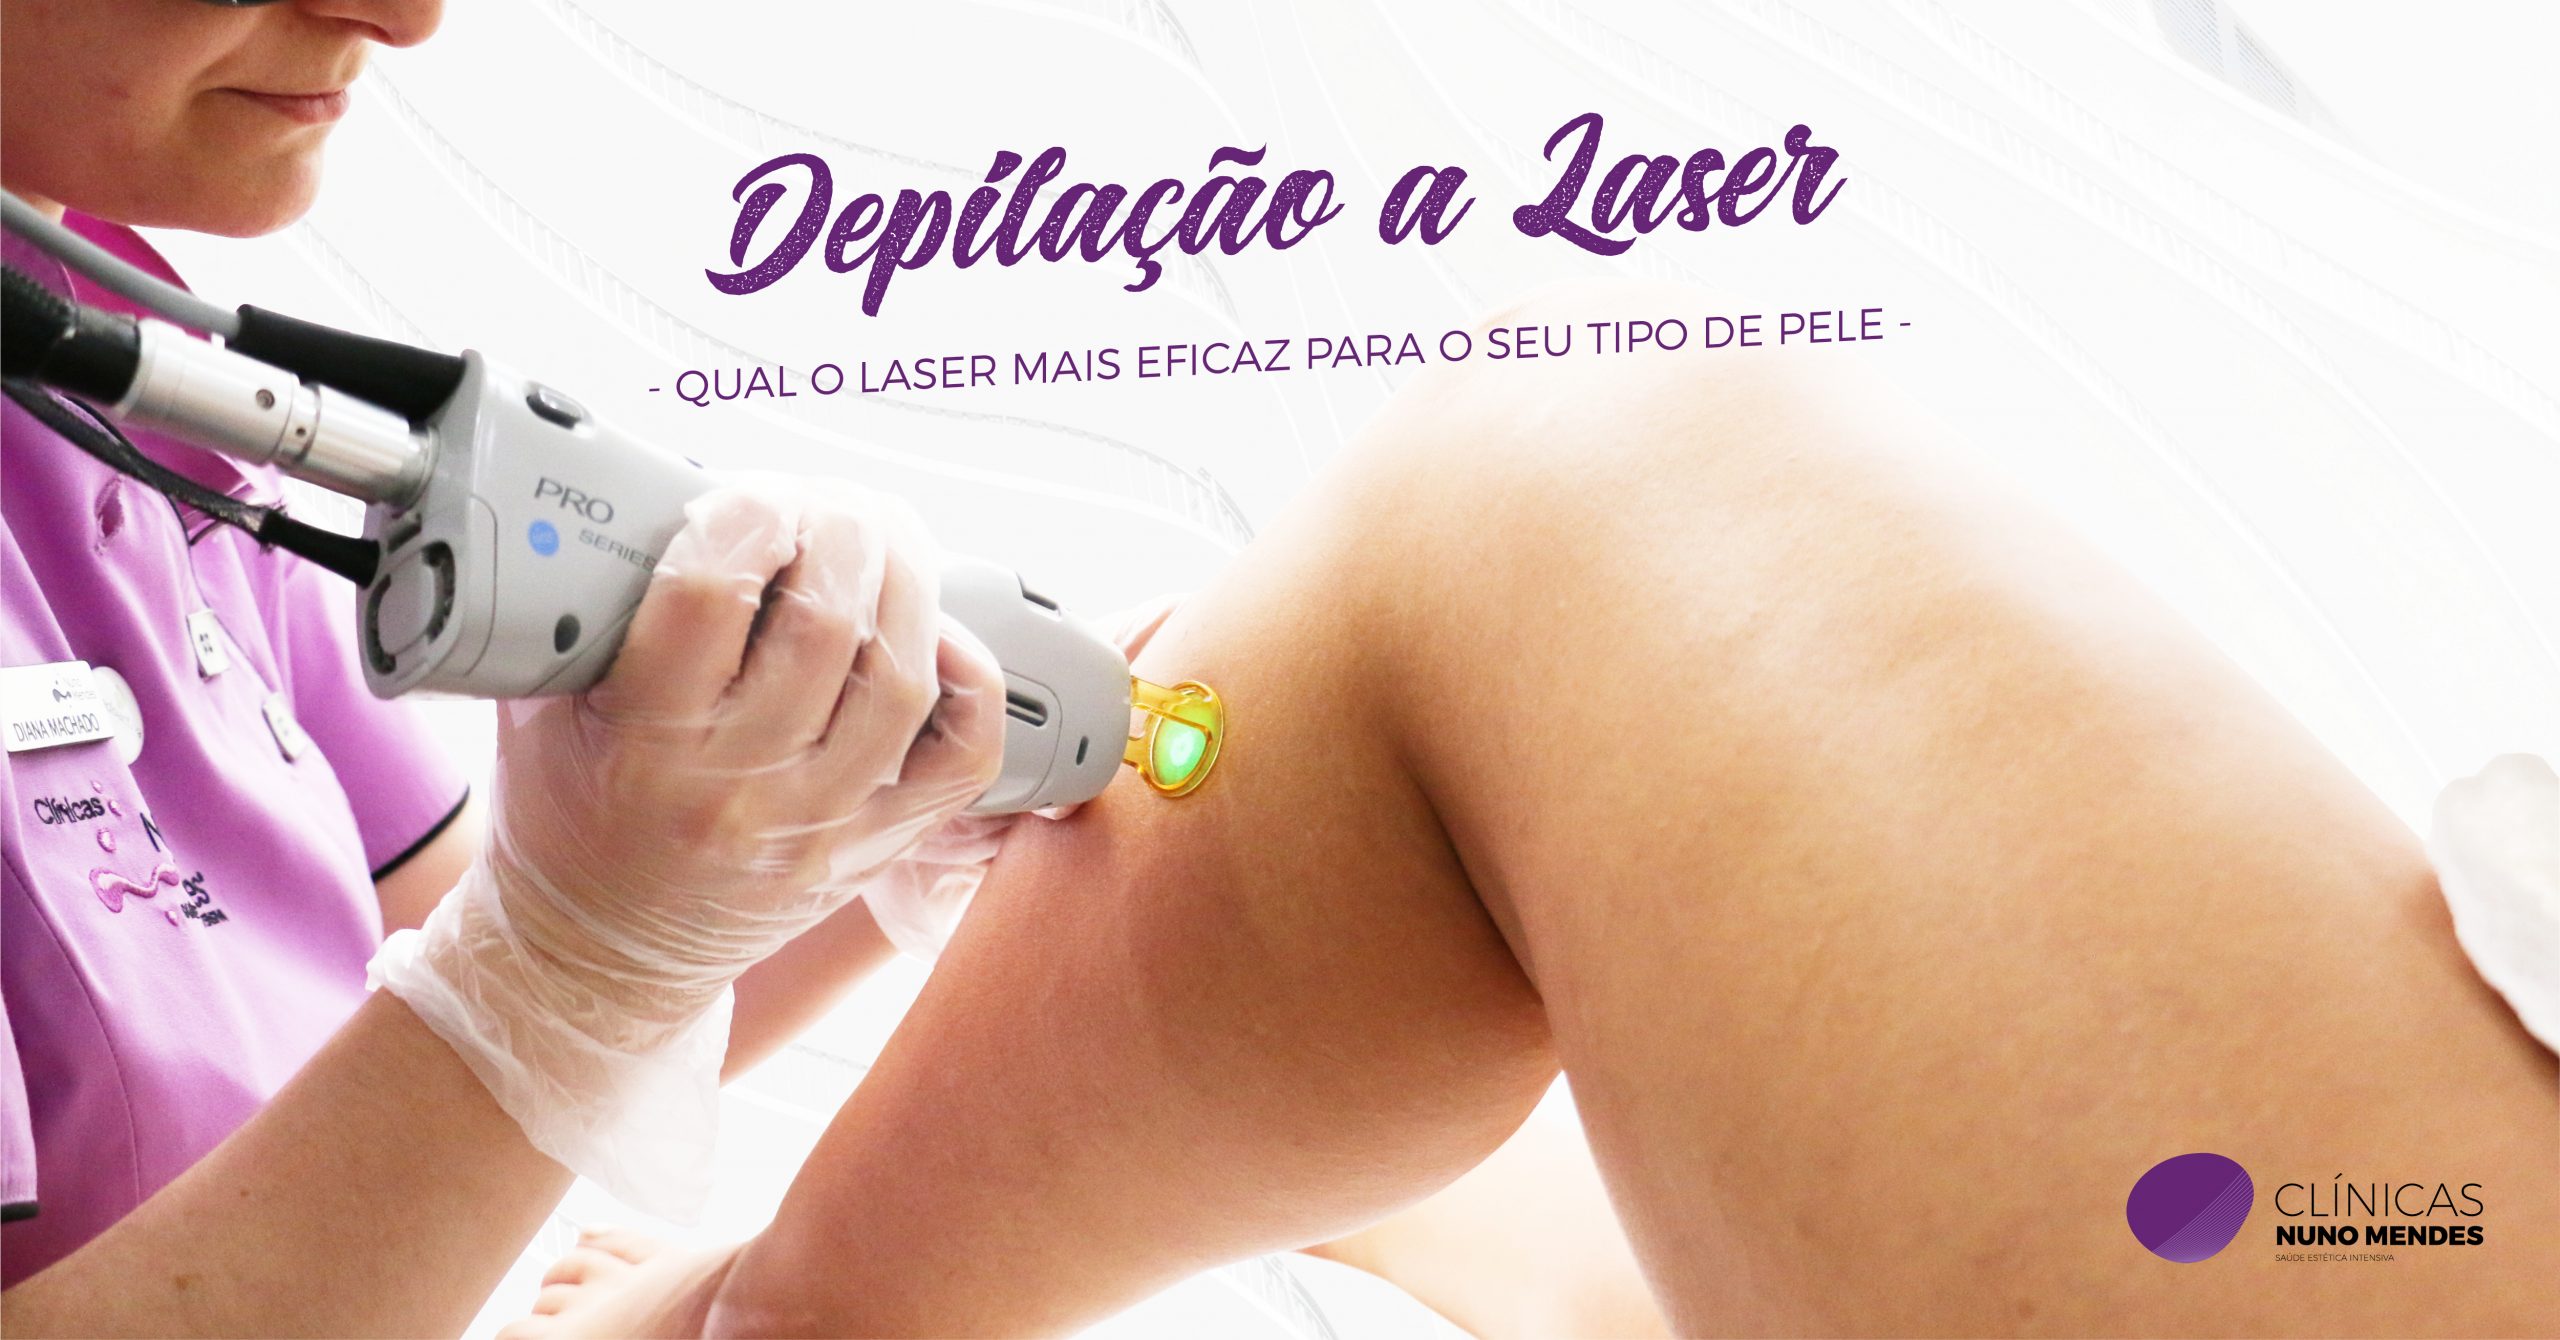 Depilação a laser: qual o laser mais eficaz para o seu tipo de pele?